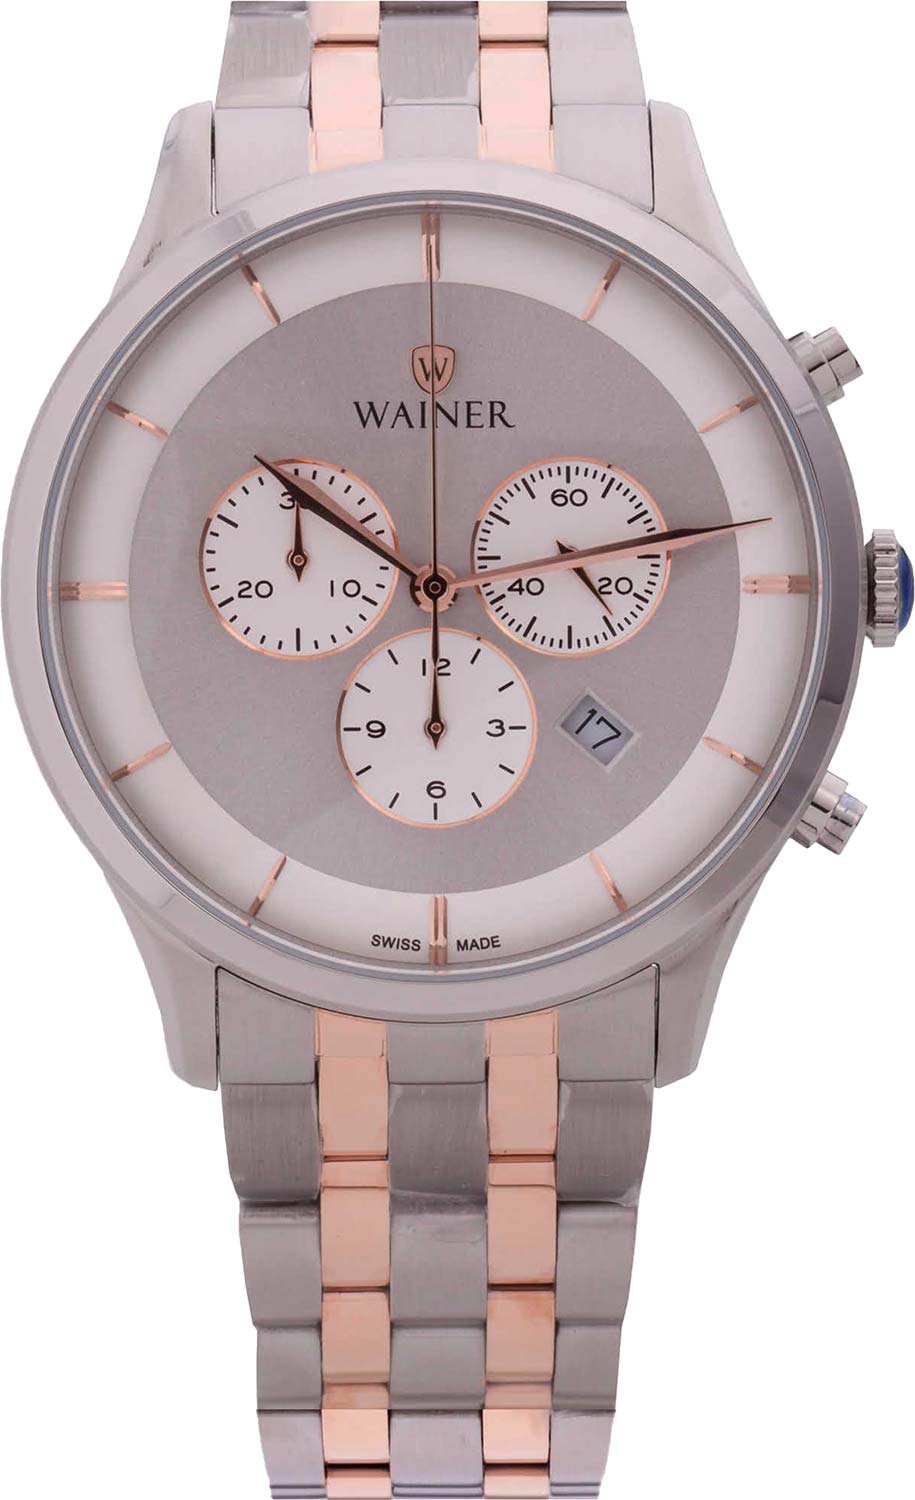 Швейцарские наручные часы Wainer WA.19911-C с хронографом